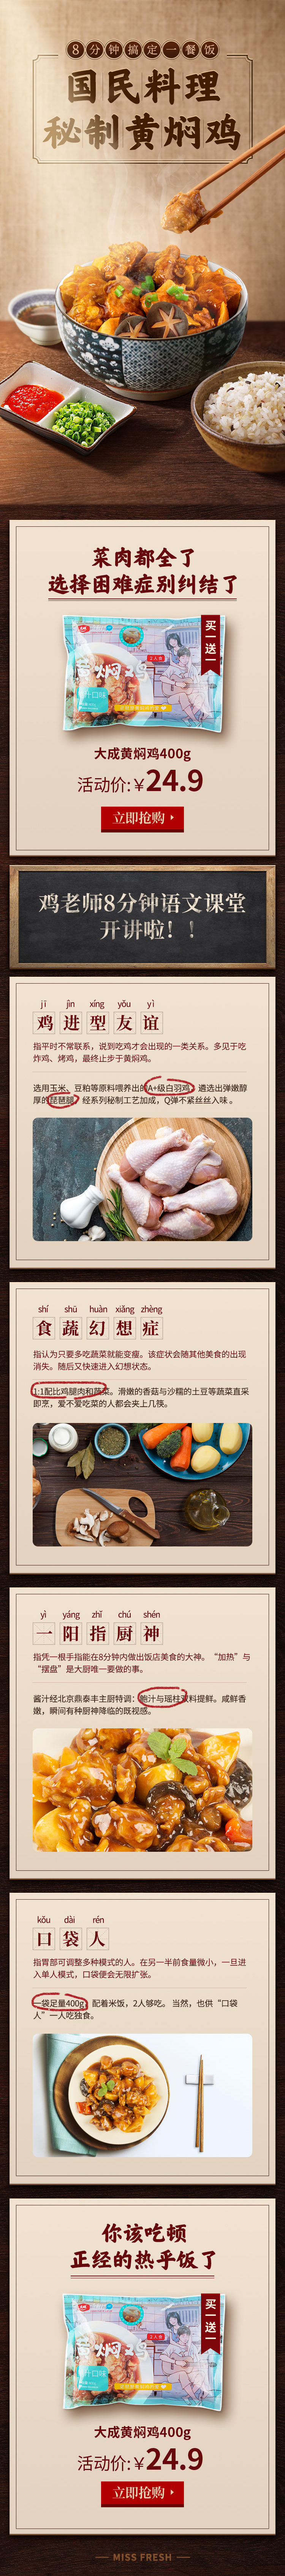 淘宝美工谷雨速食黄焖鸡食品中国风详情页作品